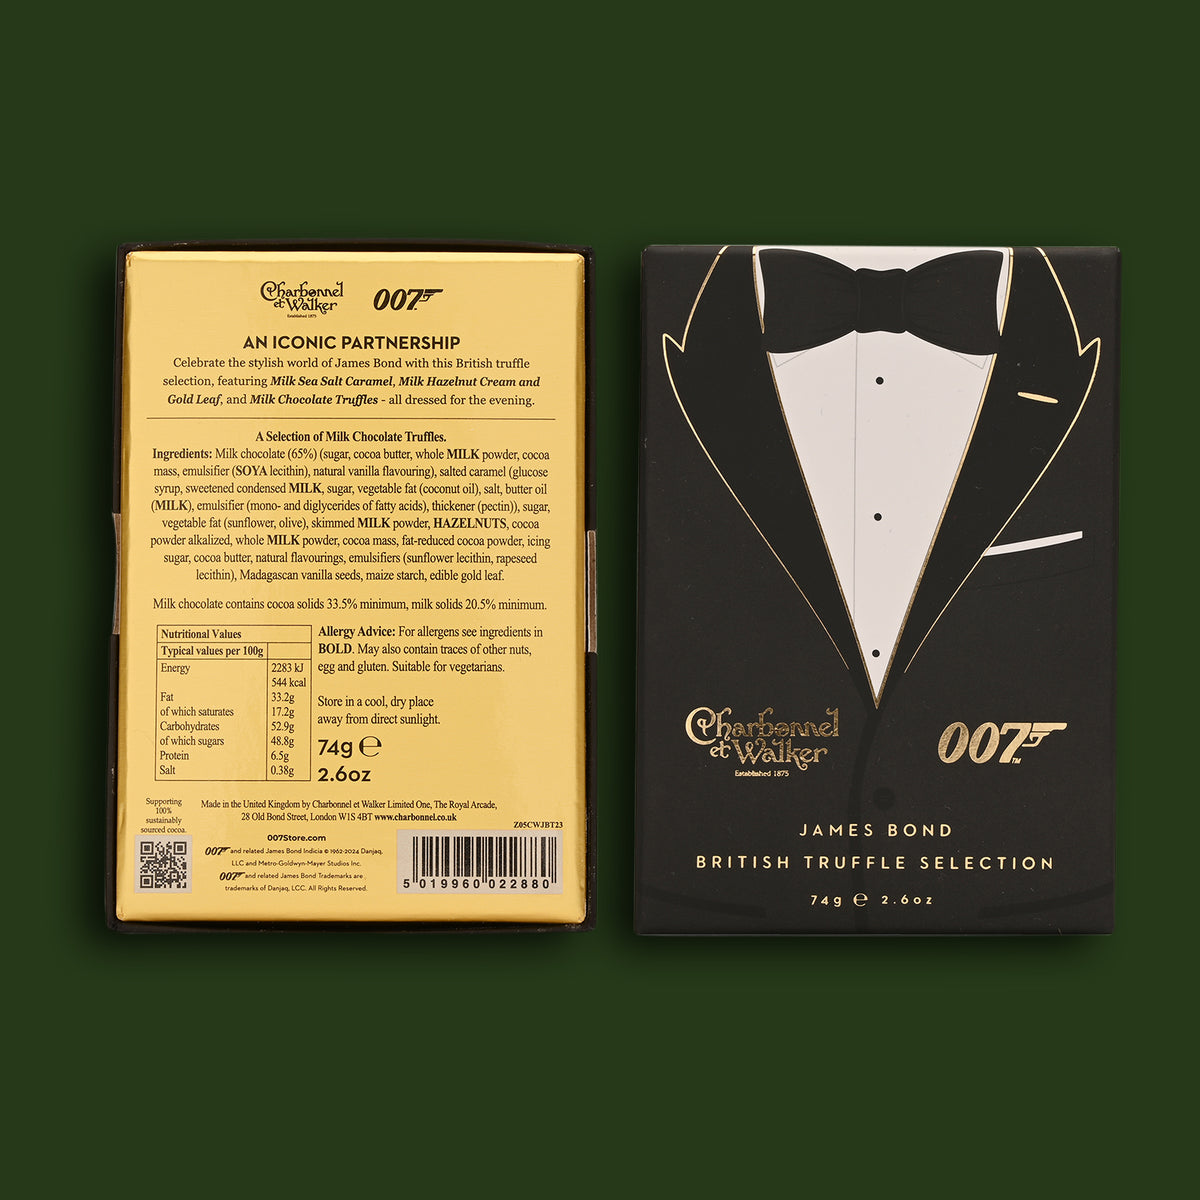 James Bond Black Tie Trüffelbox – Von Charbonnel et Walker (74 g) 